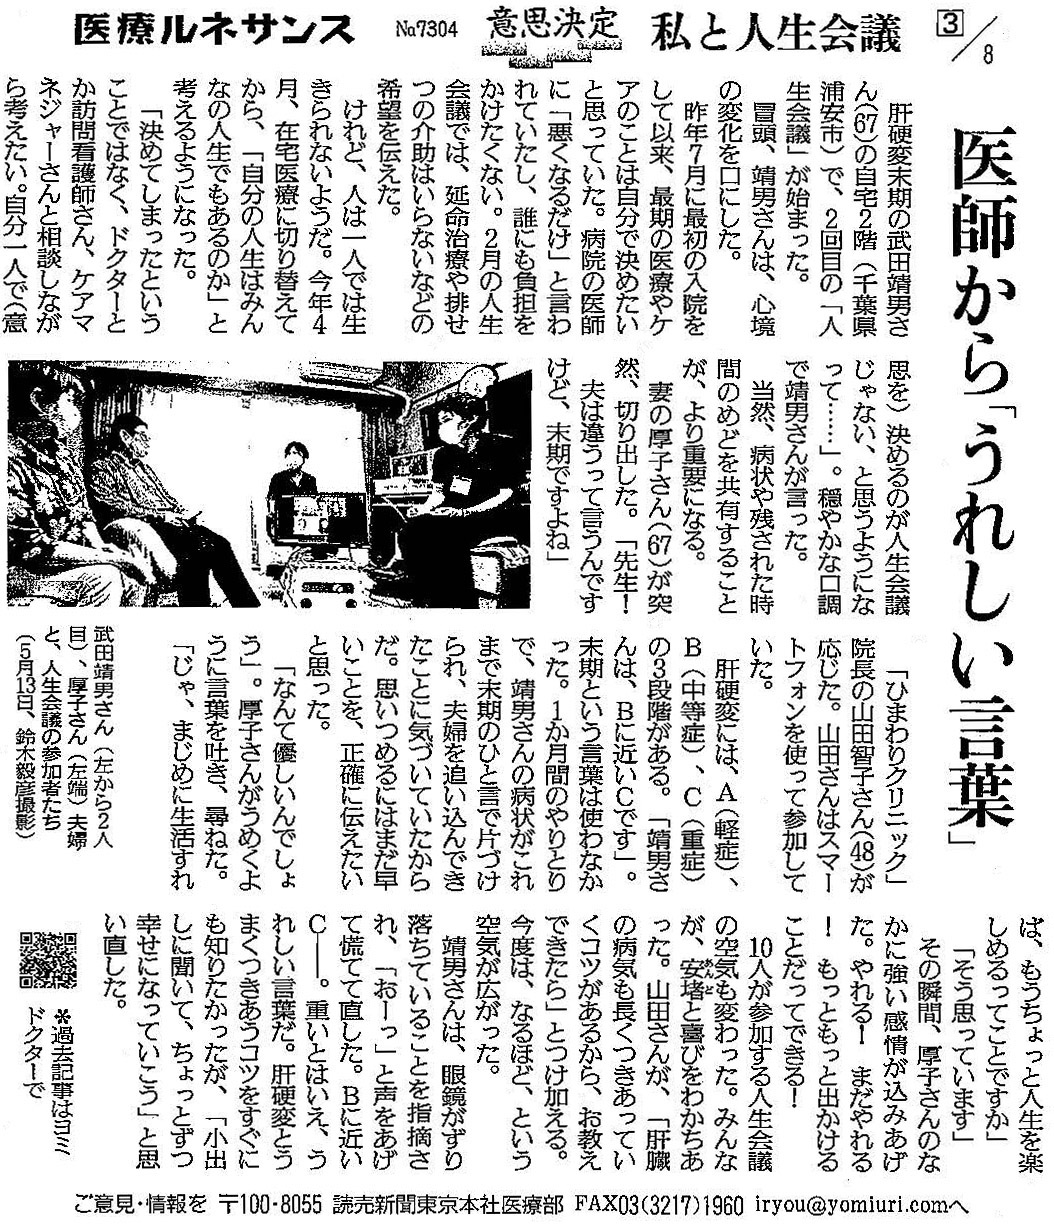 読売新聞 2020年6月16日 掲載記事